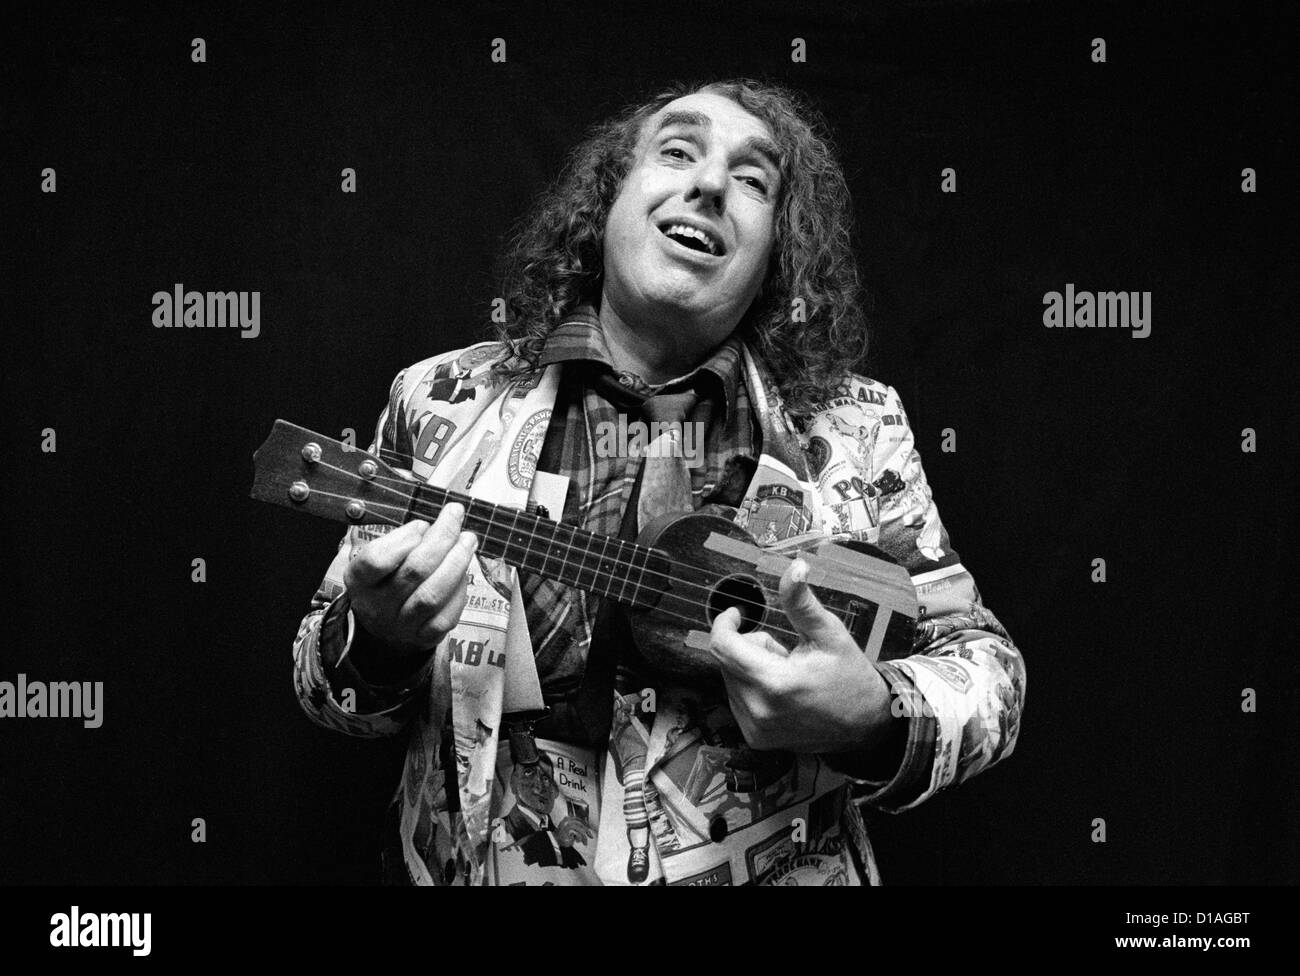 Tiny Tim, playing ukulele and smiling. Stock Photo